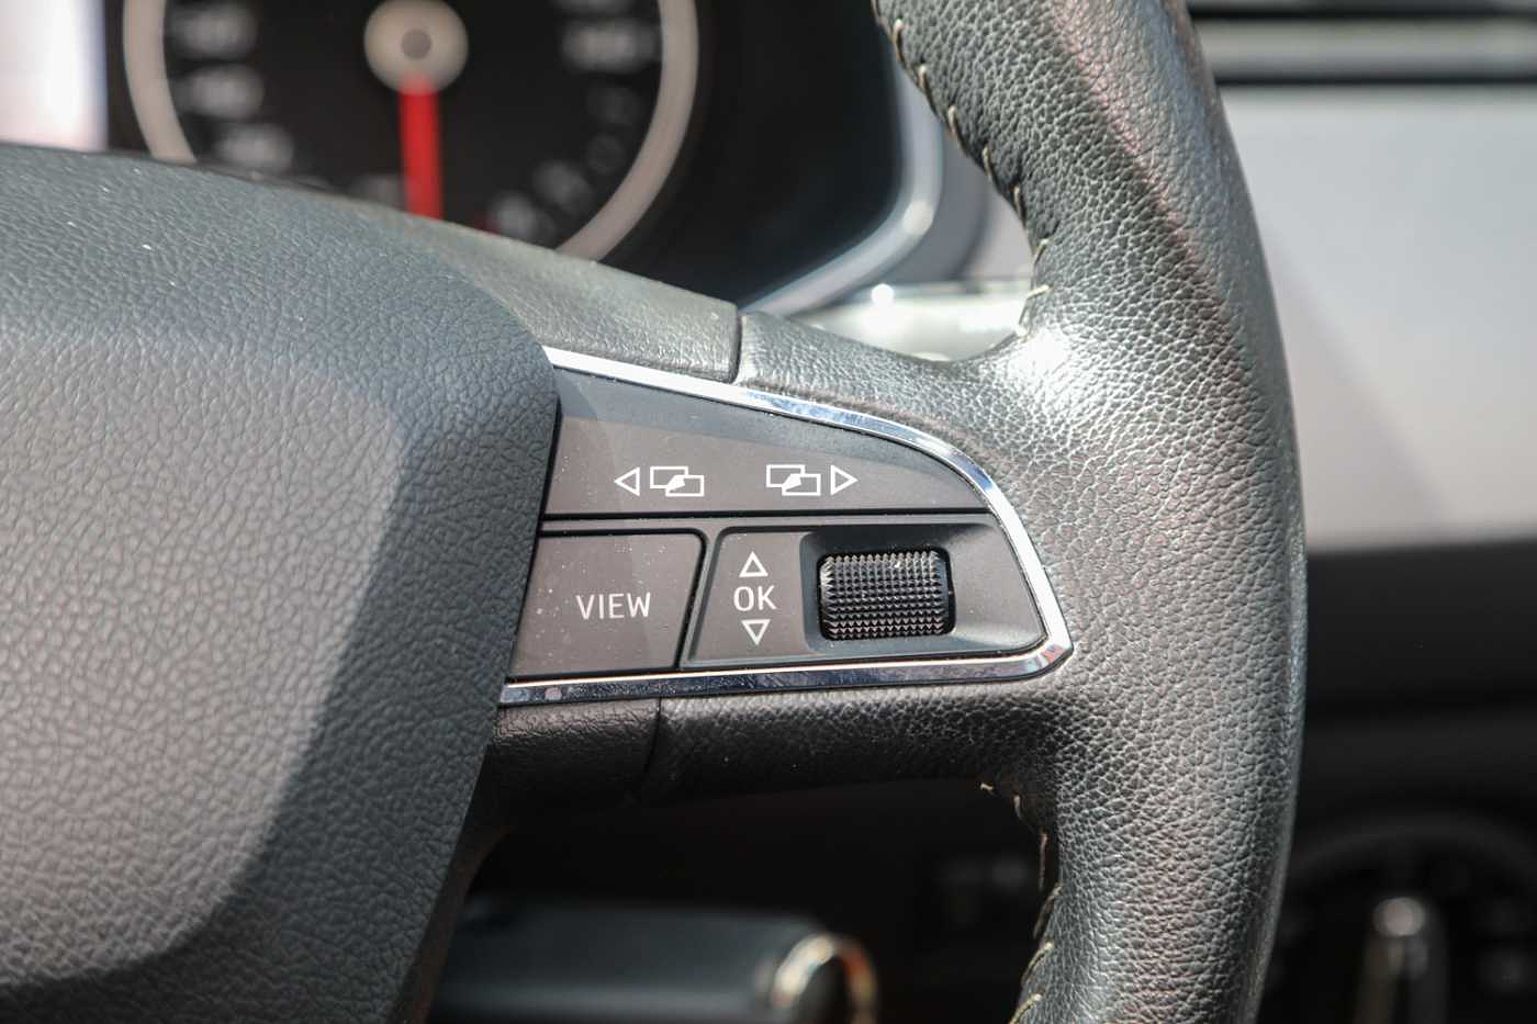 SEAT Ibiza 1.0 MPI (80ps) SE Technology (s/s) 5-Door